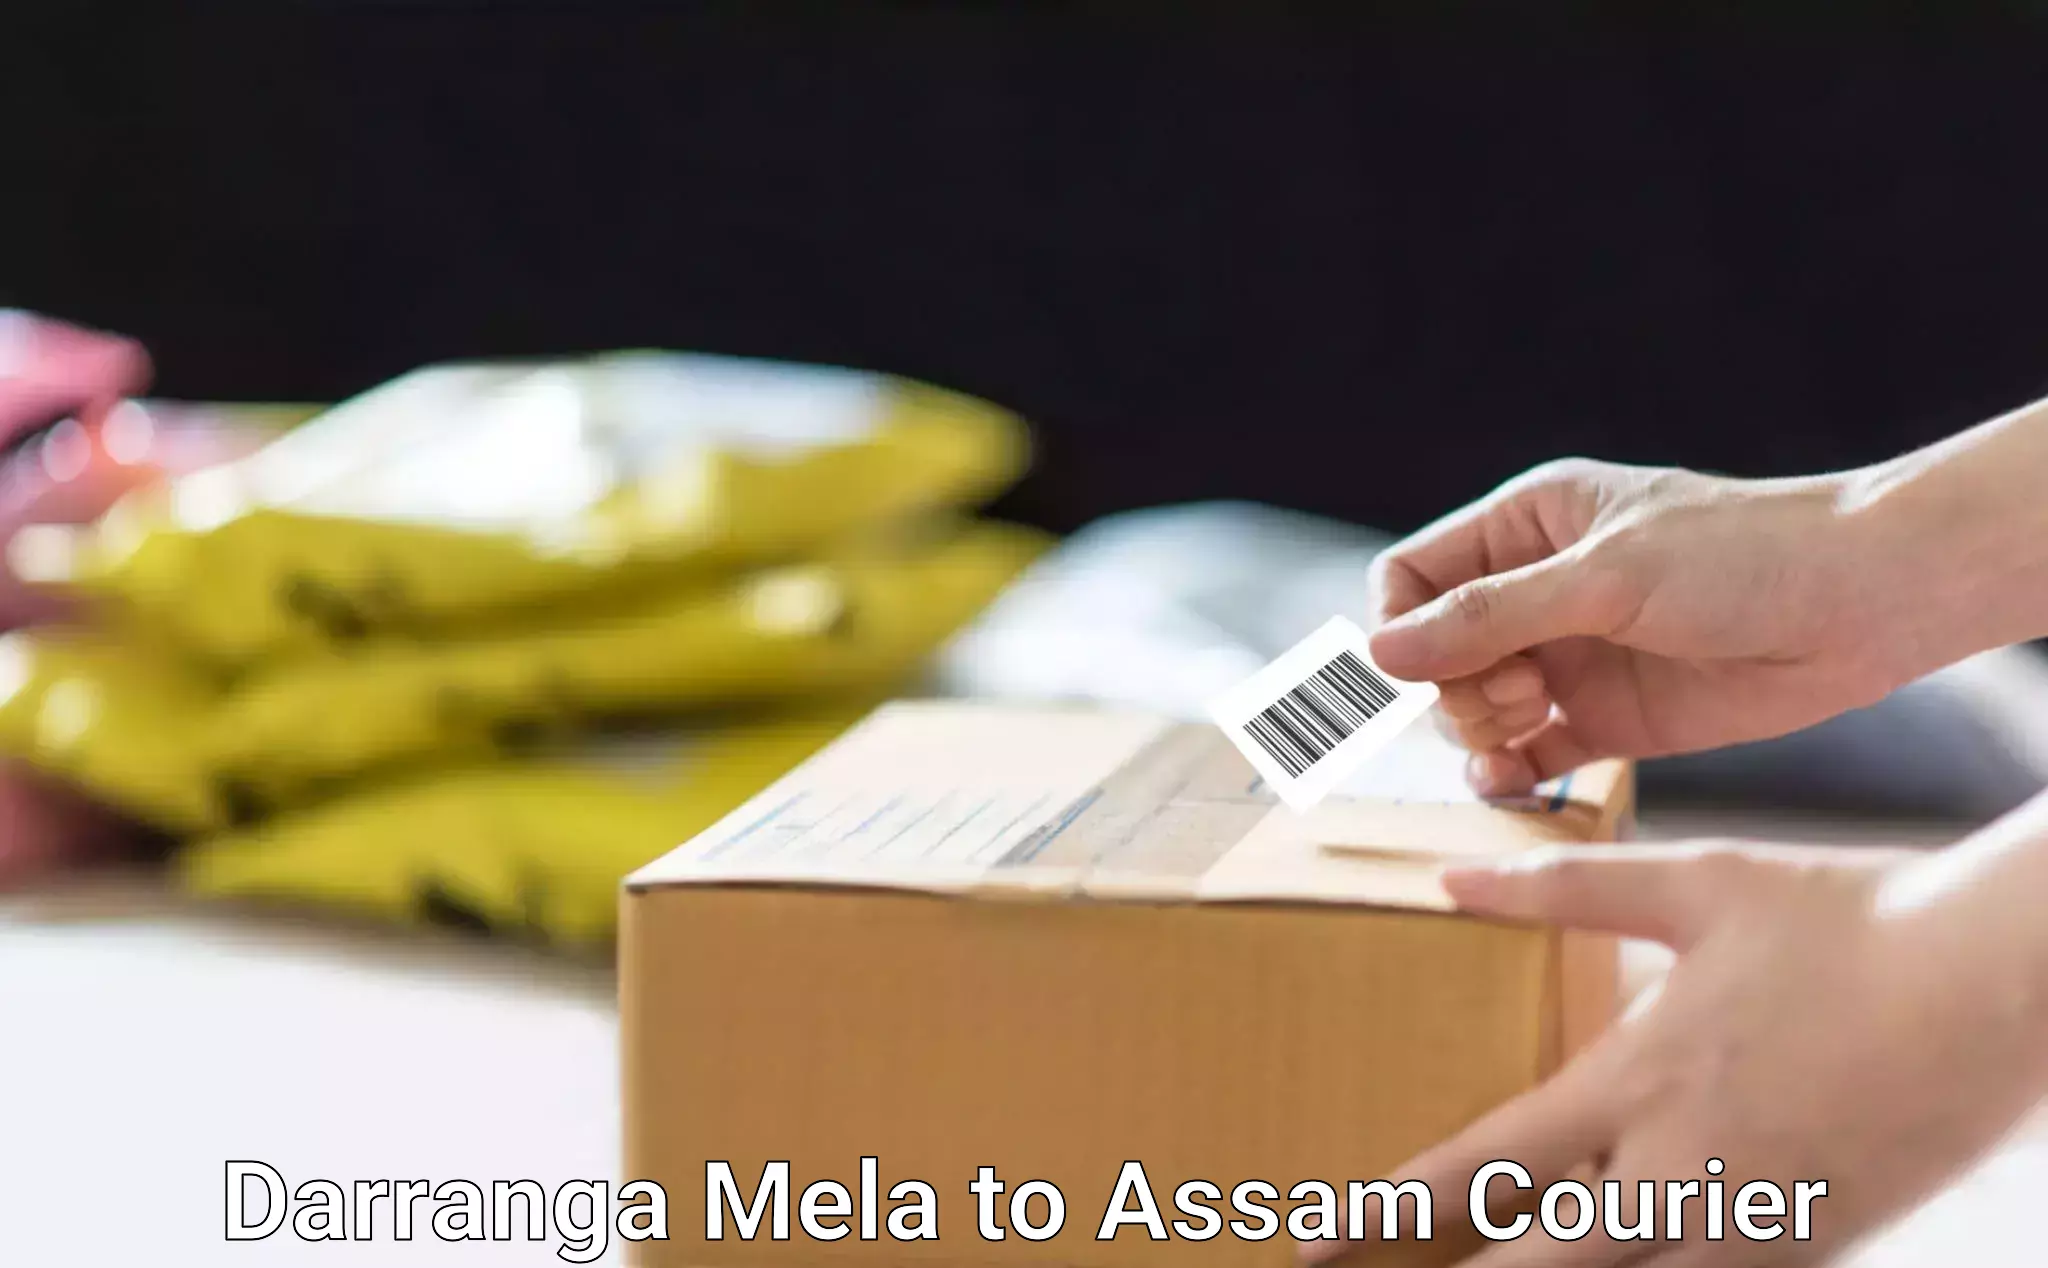 Smart logistics solutions Darranga Mela to Assam